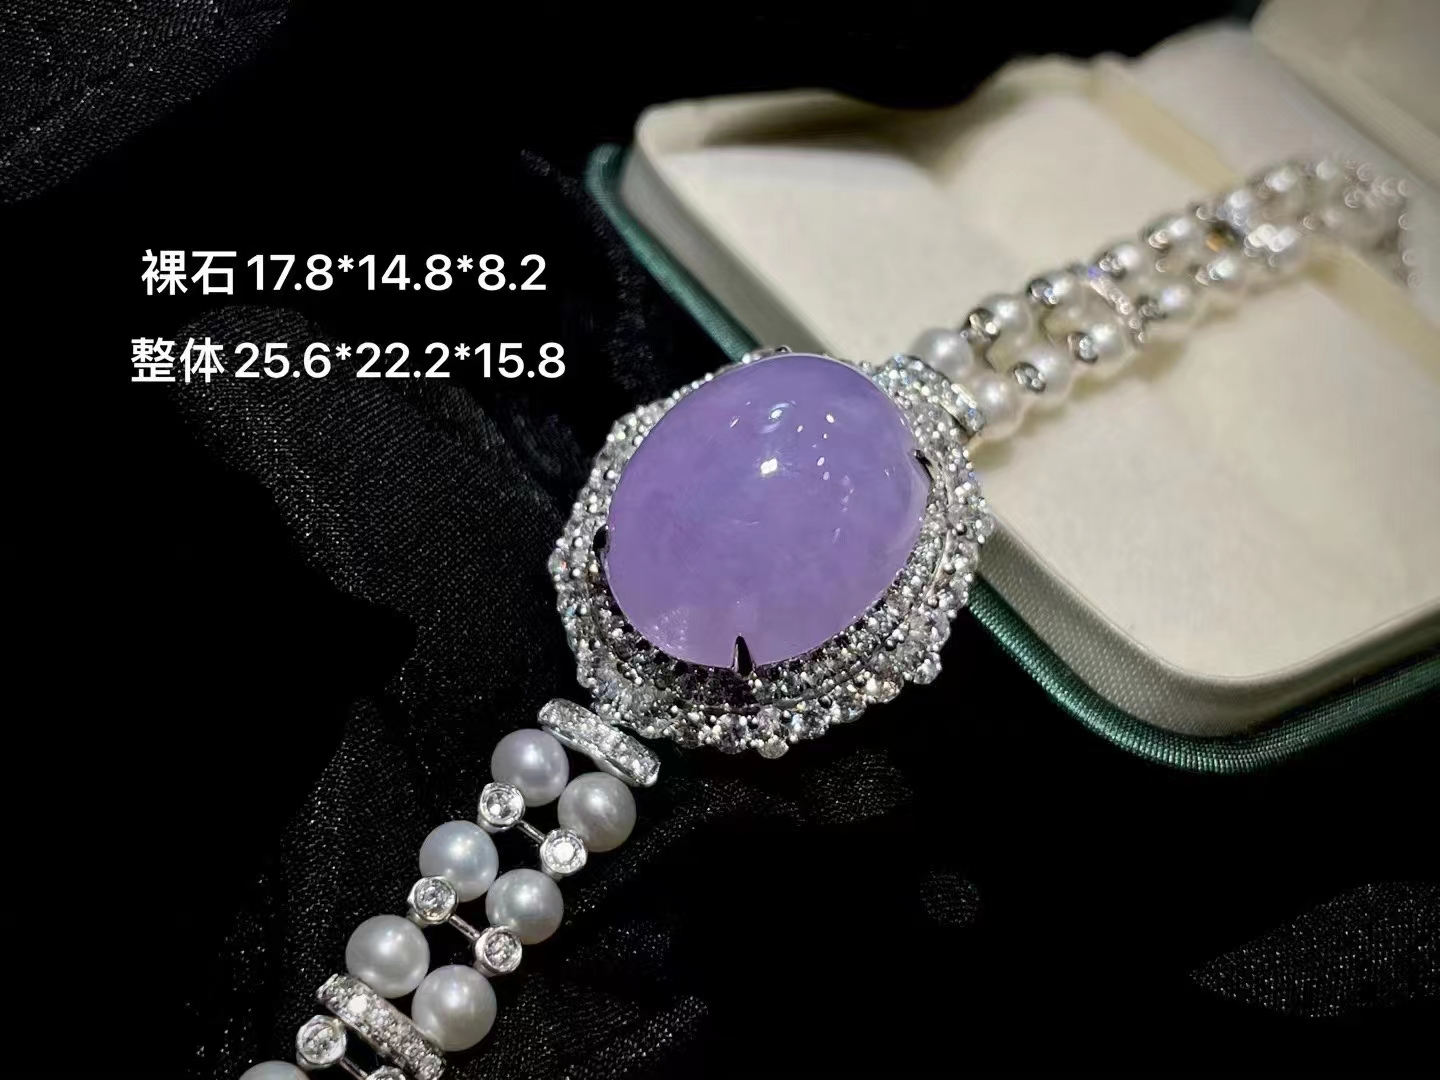 紫罗兰翡翠三用款 吊坠+戒指+手链 相当于花一份钱买三个首饰，超值了！